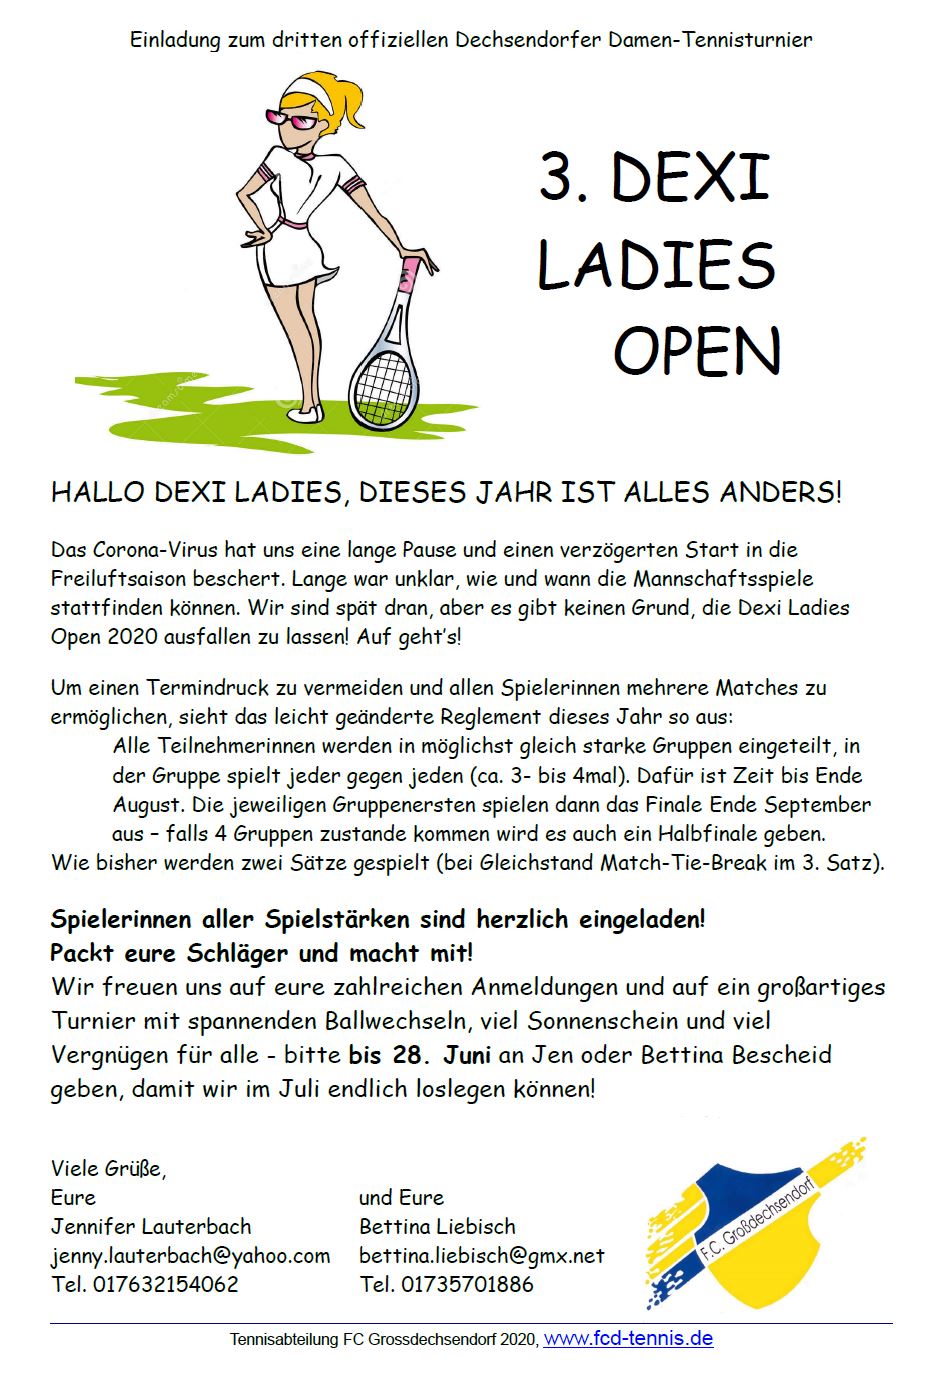 dexi_ladies_open_2020final.png